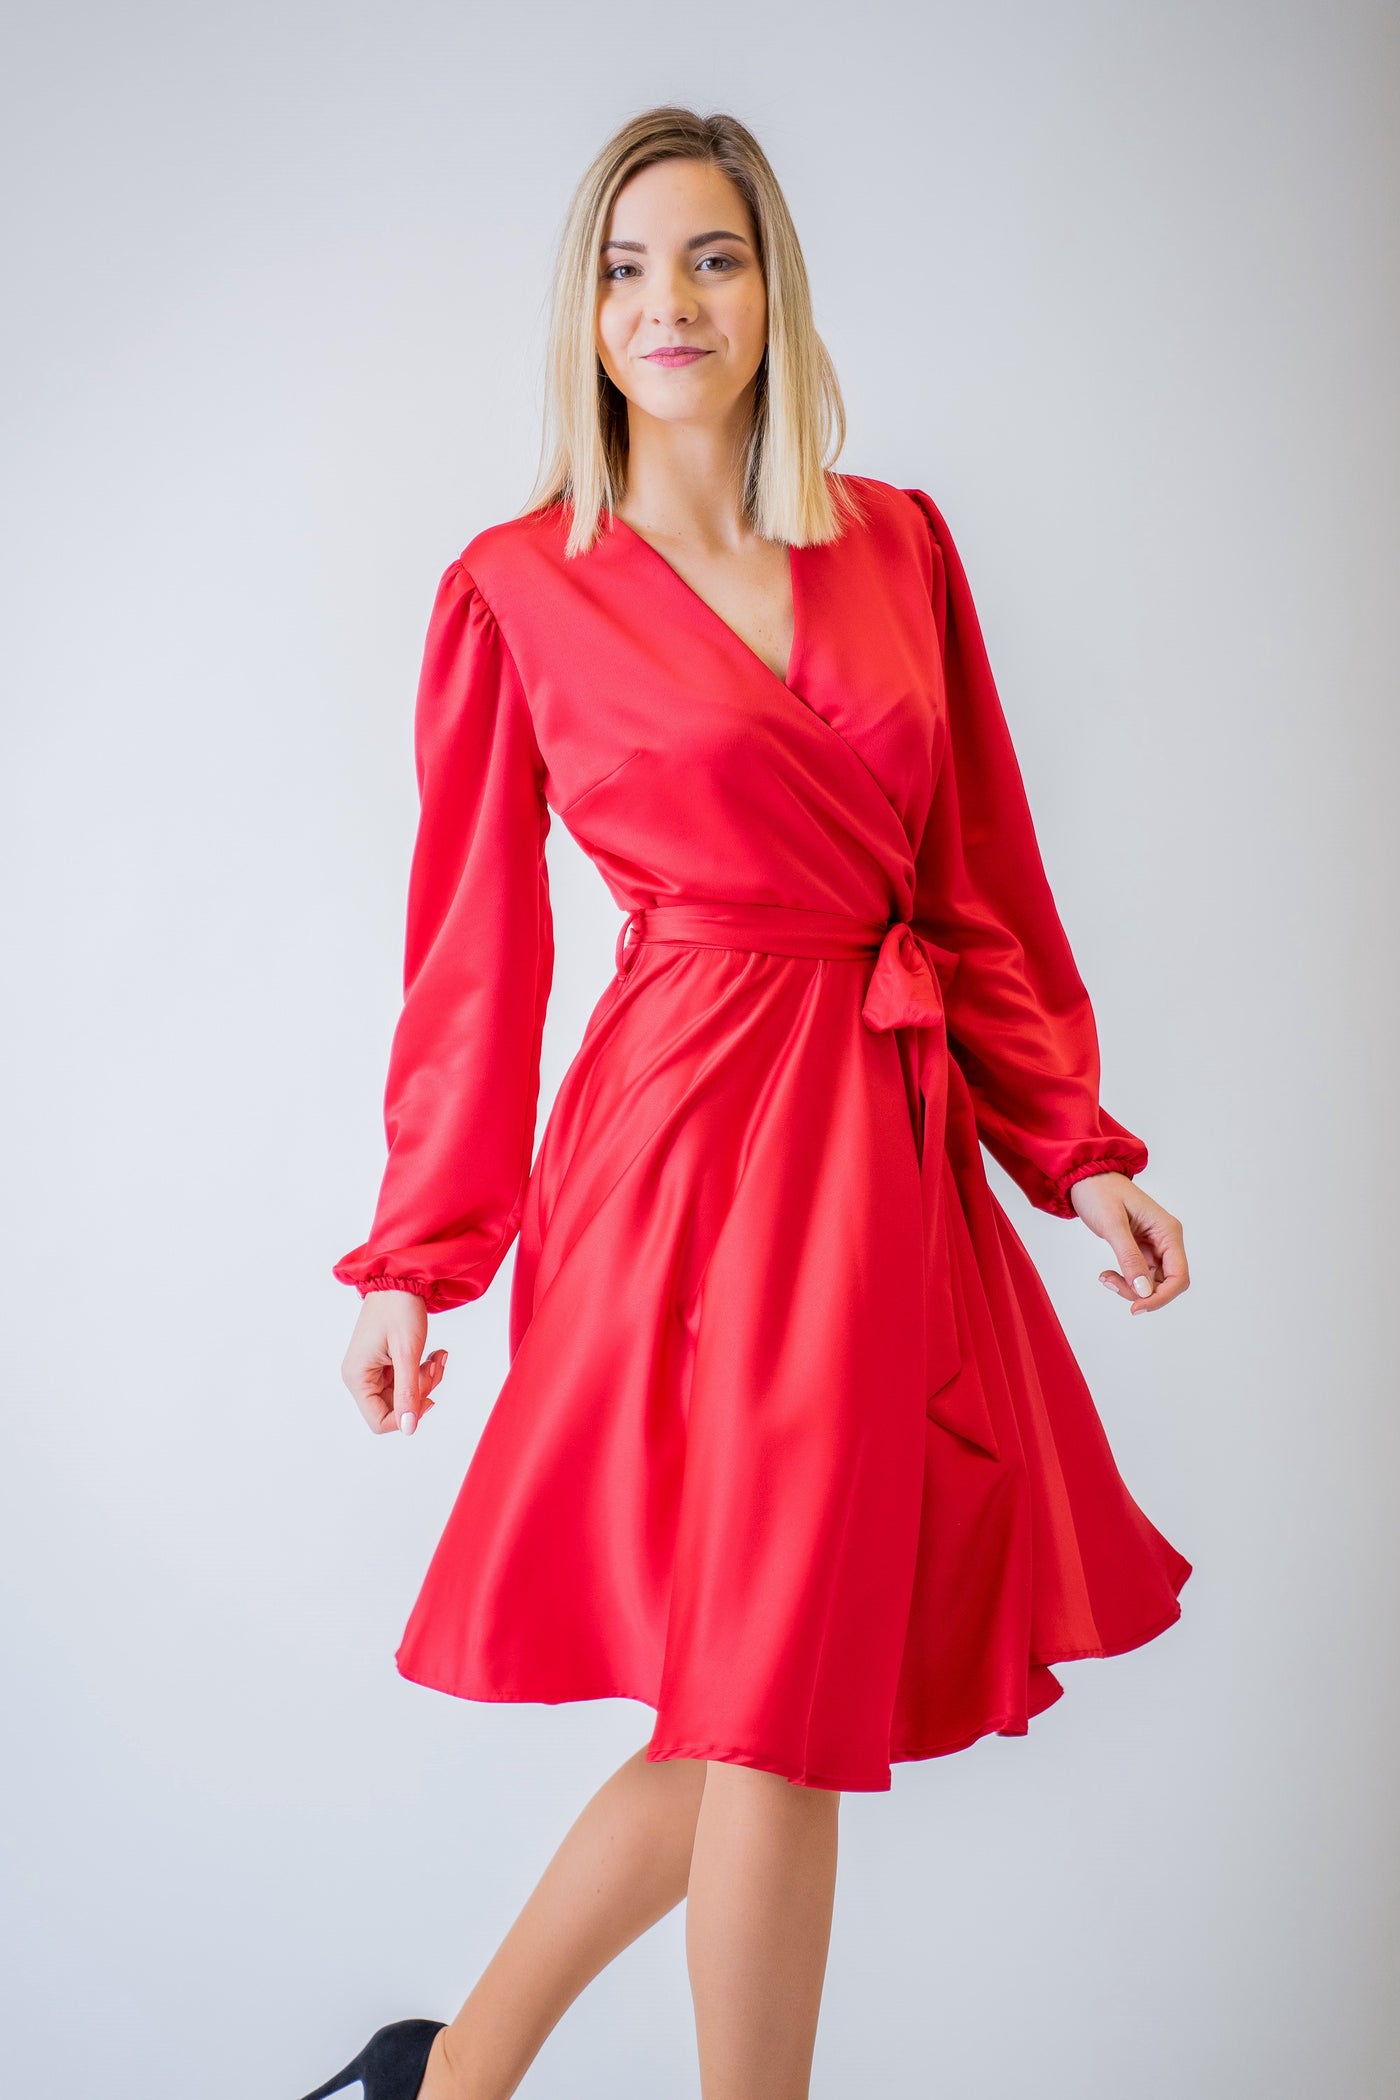 Červené krátke šaty s dlhým rukávom - spoločenské šaty